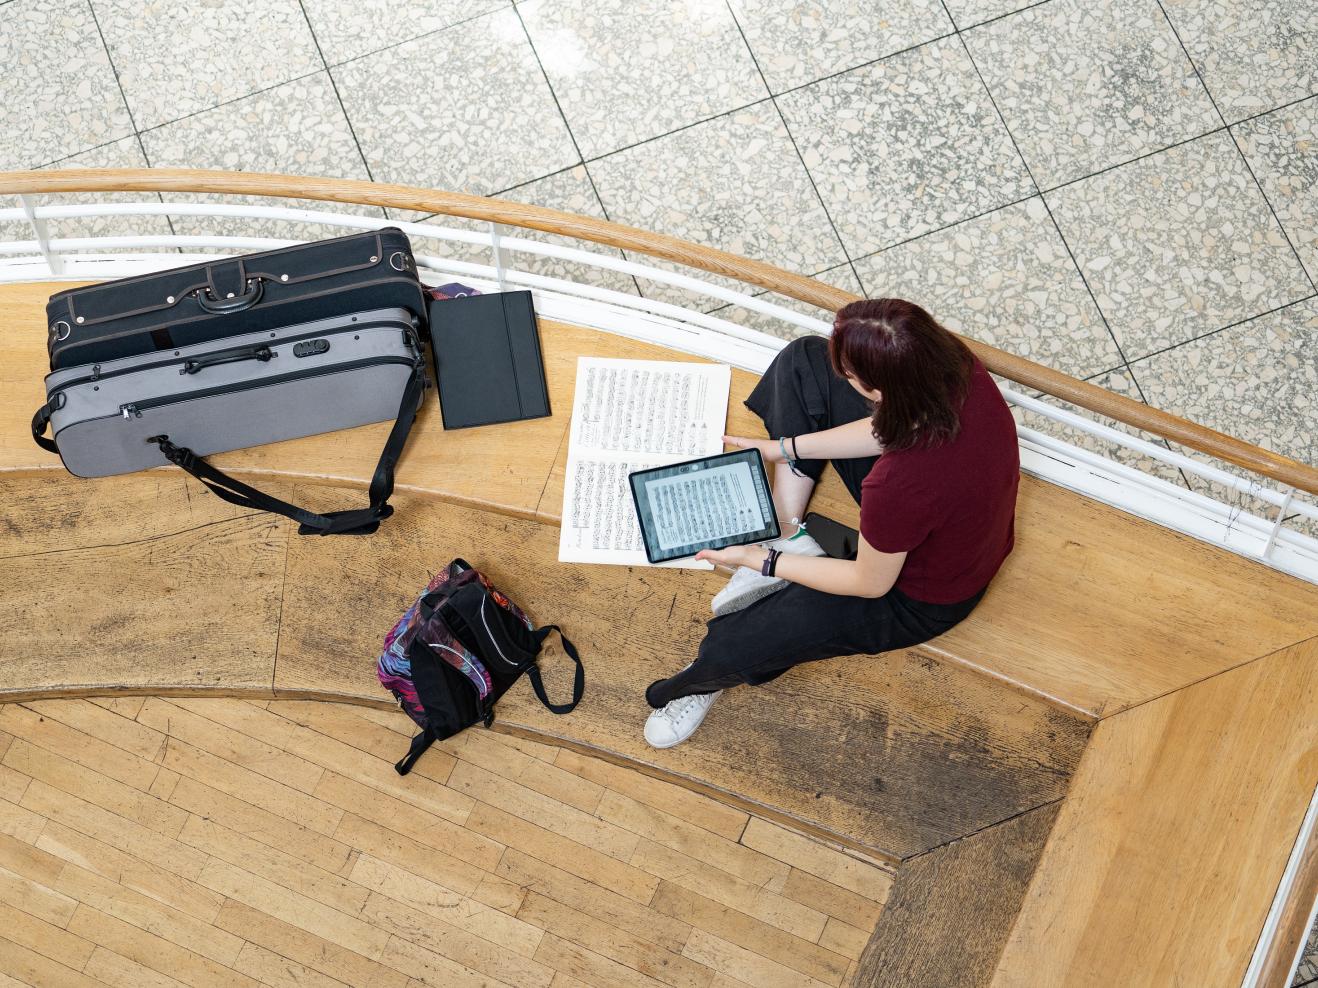 Eine Studentin, von oben gesehen, sitzt im Foyer auf der Bank mit einem Tablet, auf dem Noten zu sehen sind und einer aufgeklappten Partitur.